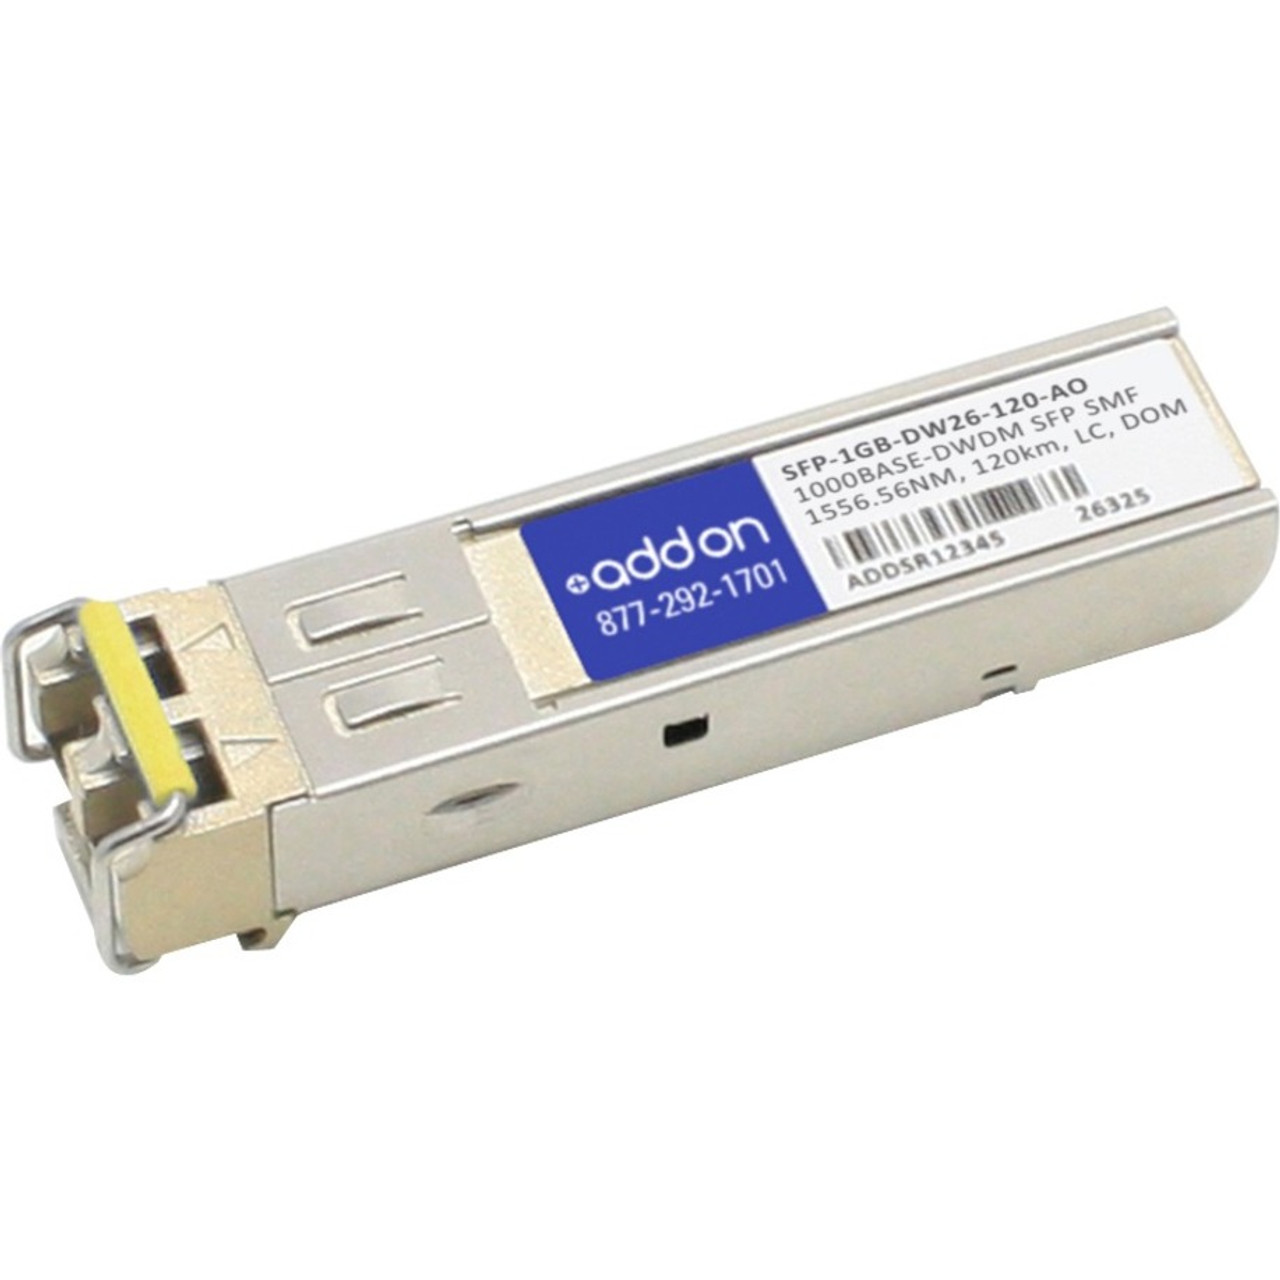 SFP-1GB-DW26-120-AO